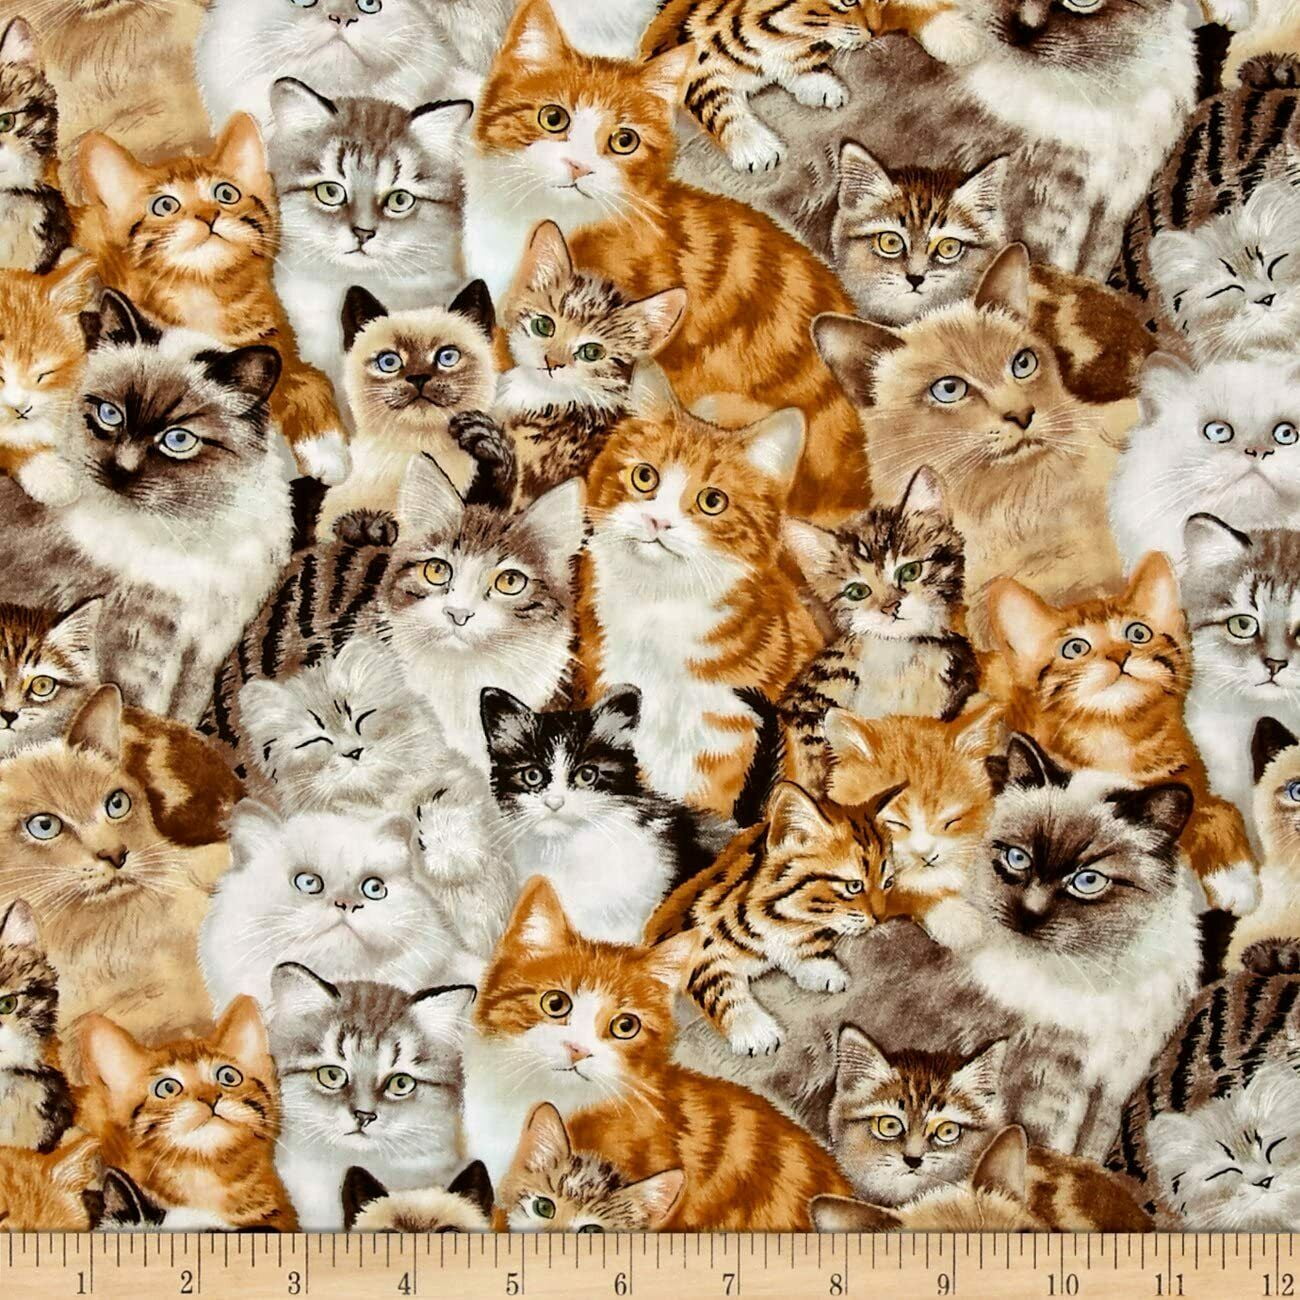 Ткань кошки купить. Ткань с котиками. Ткань с котятами. Мебельная ткань котики. Ткань хлопок кошки.